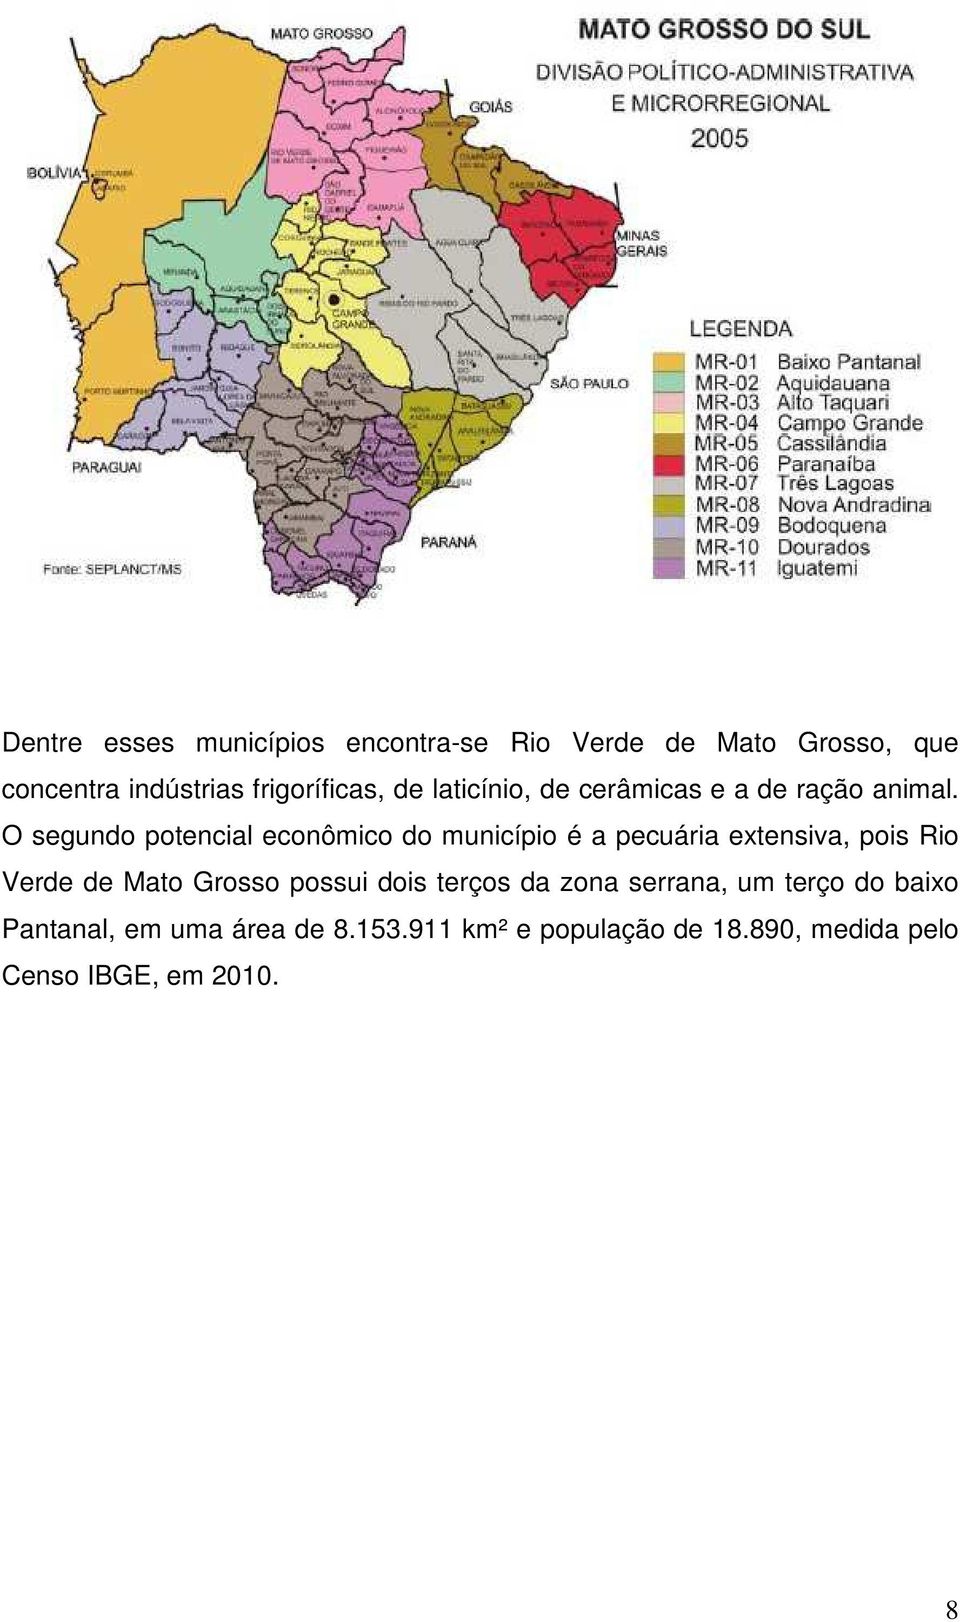 O segundo potencial econômico do município é a pecuária extensiva, pois Rio Verde de Mato Grosso